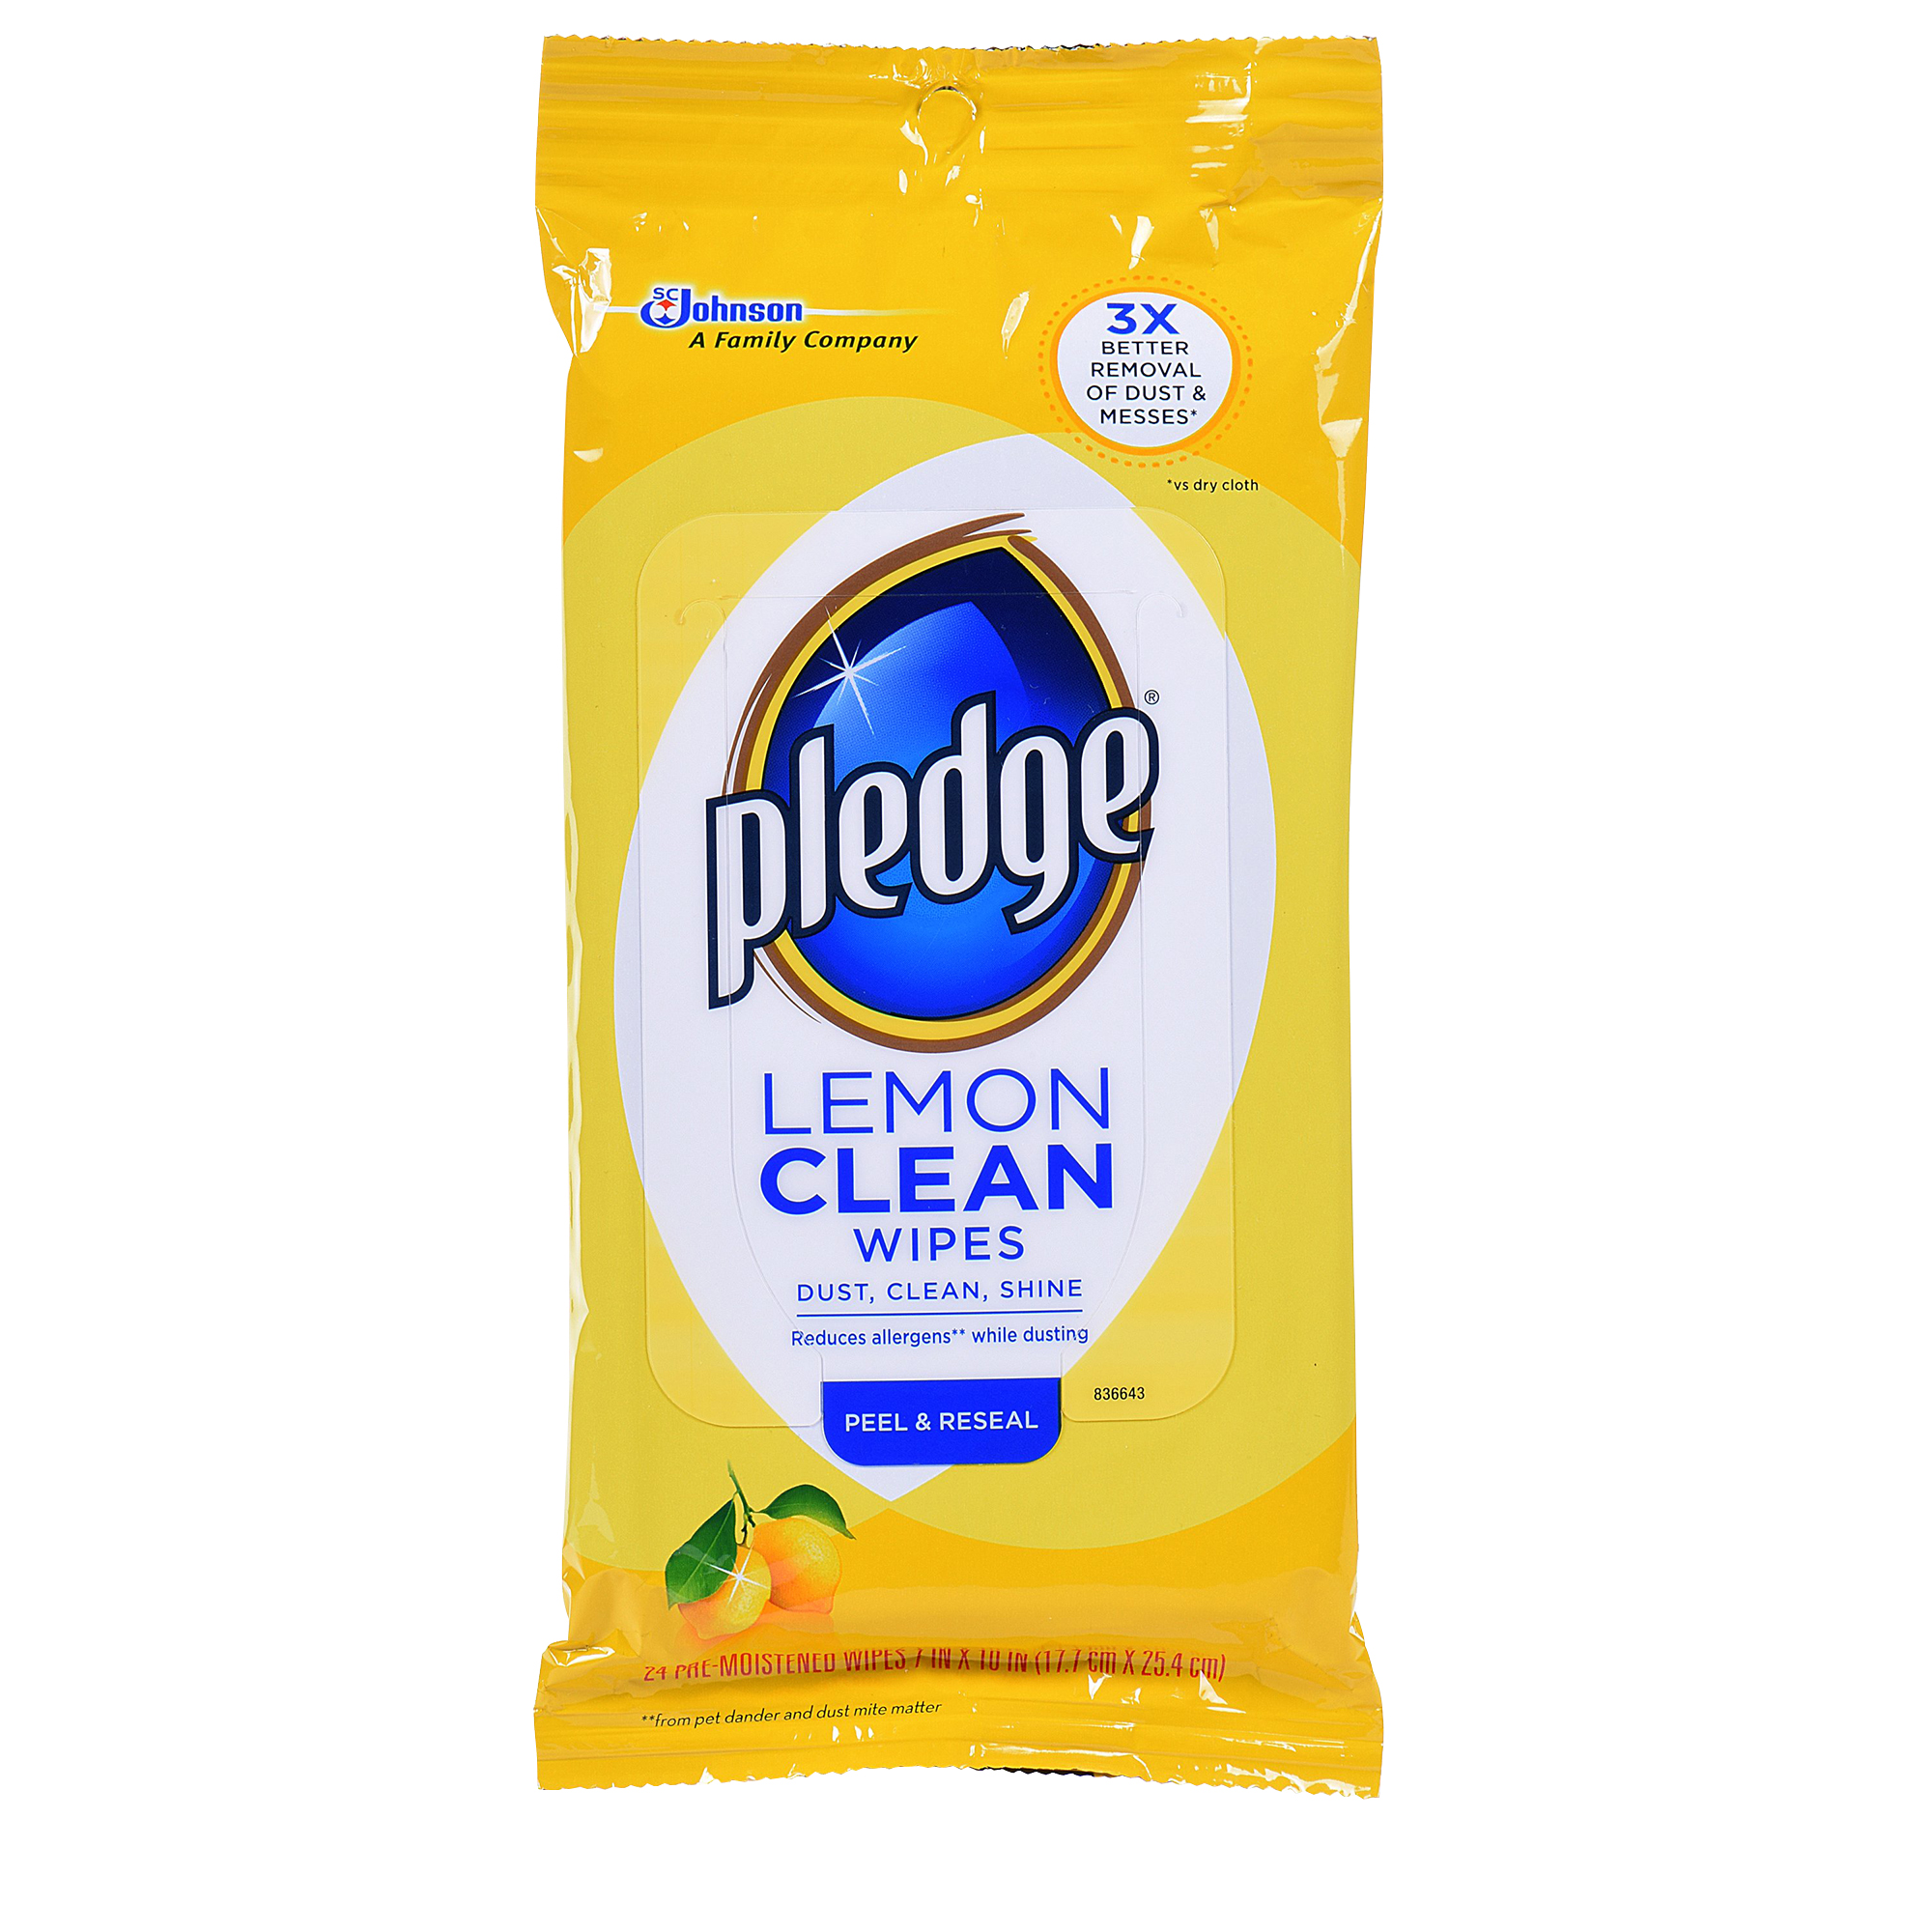 Pledge Lemon Clean Wipes - 24 ct., 12/Case